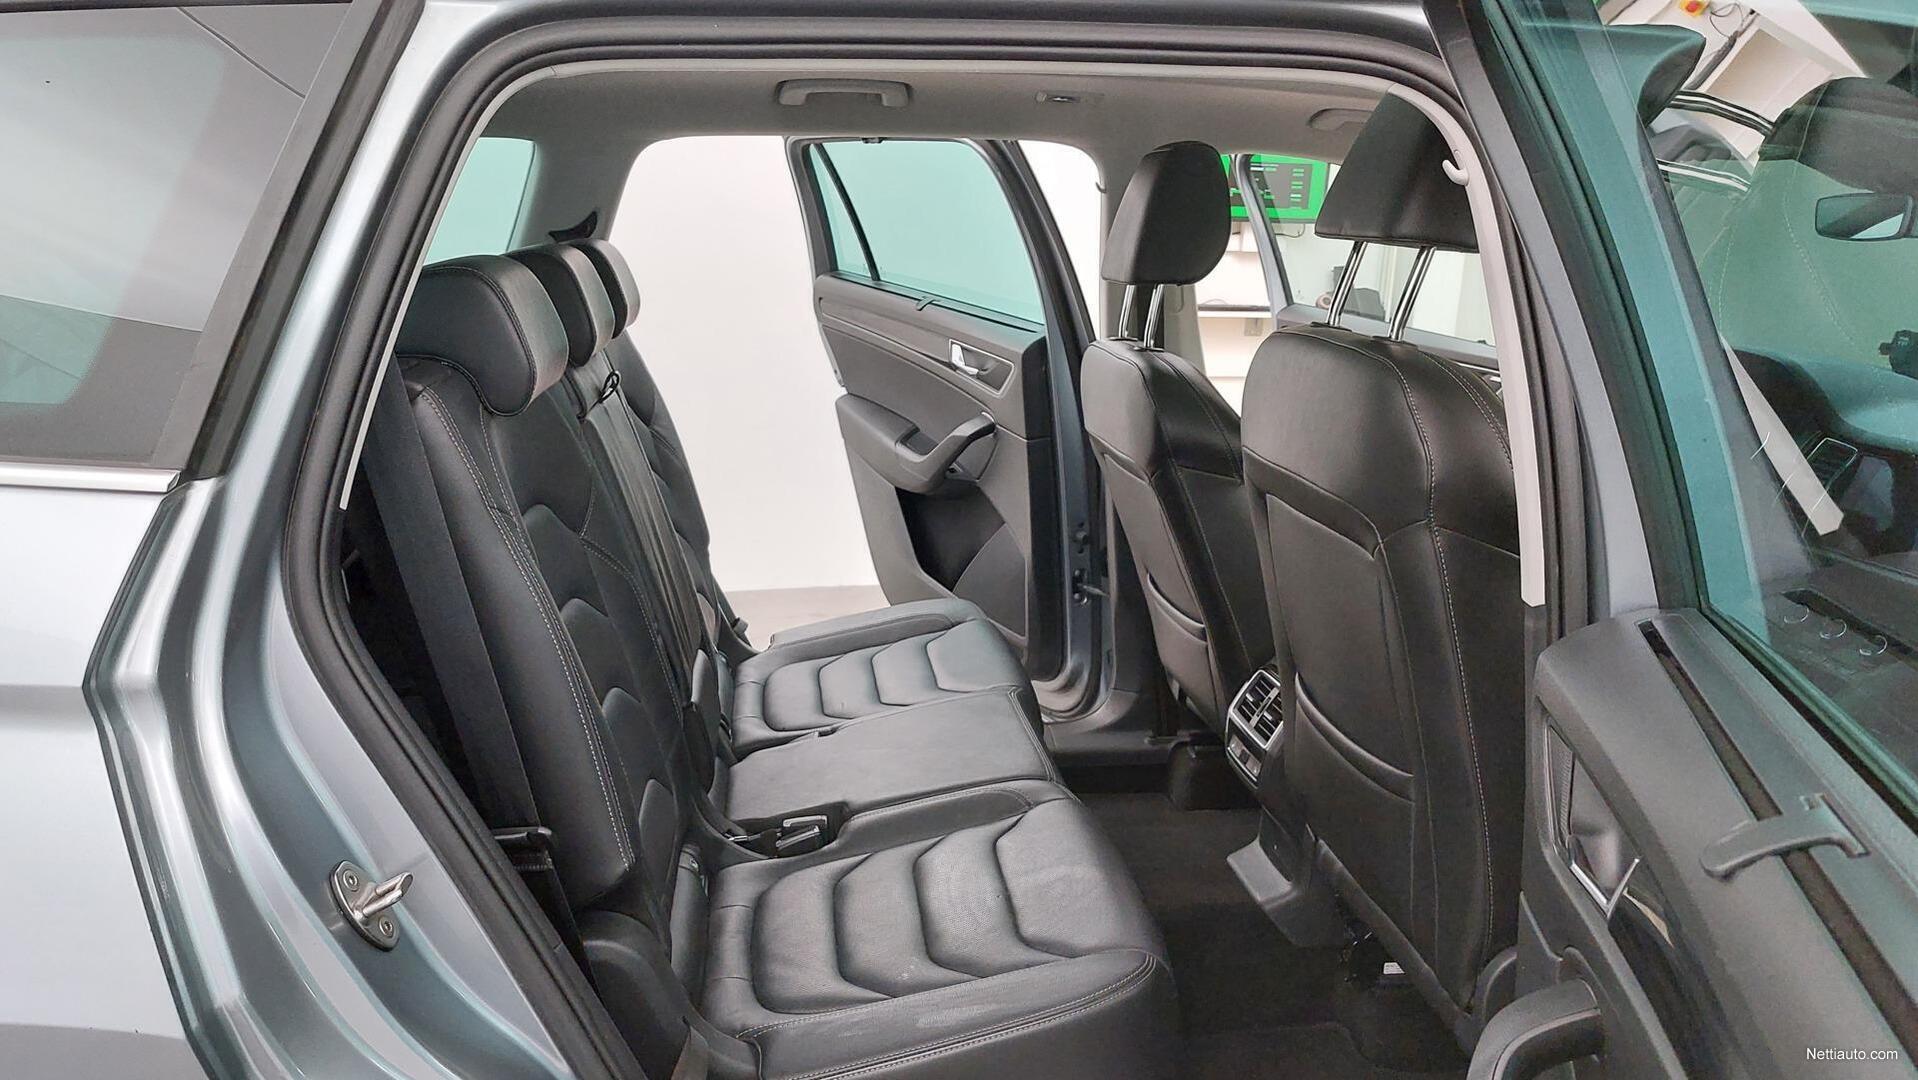 Skoda Kodiaq 1,4 TSI 4x4 Exclusive DSG Aut. 150hv | 7-Paikkainen |  Navigointi | Ilmastoidut istuimet | Ada-vakkari | Lasikatto | All-terrain  2018 - Used vehicle - Nettiauto